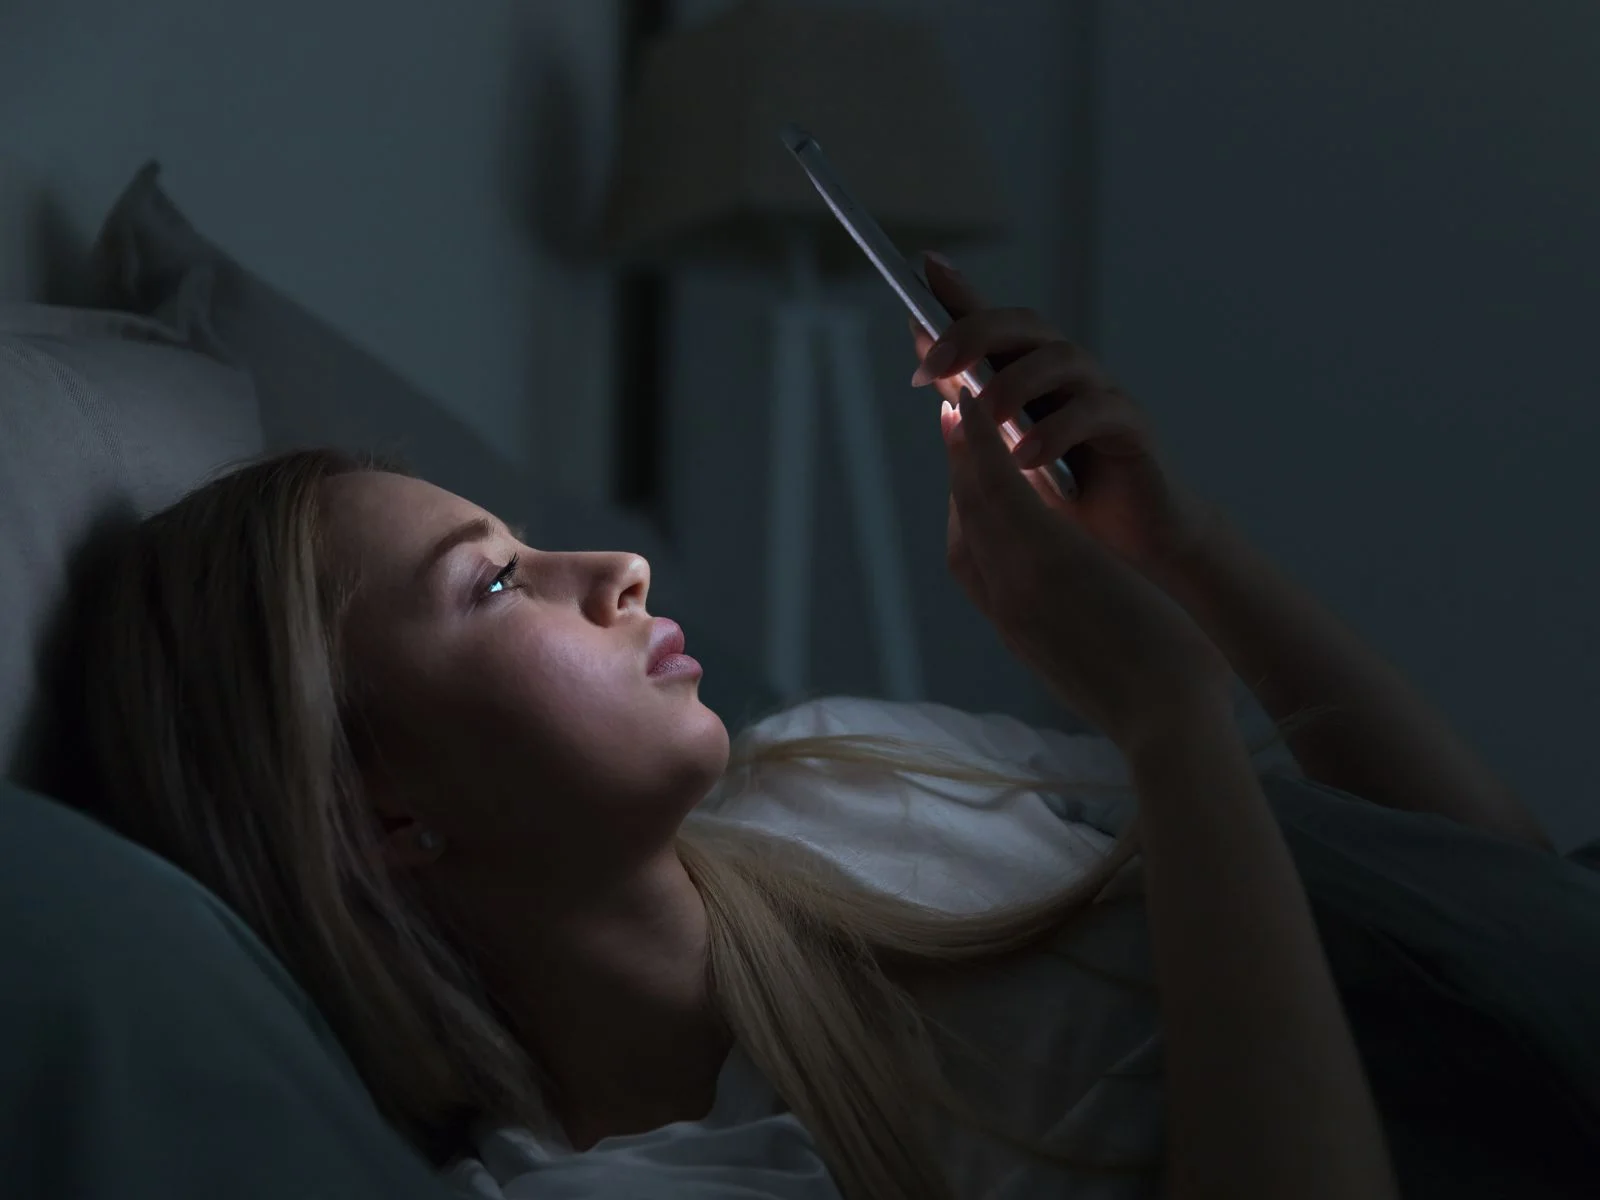 電子設備的使用在睡前可能對睡眠產生負面影響